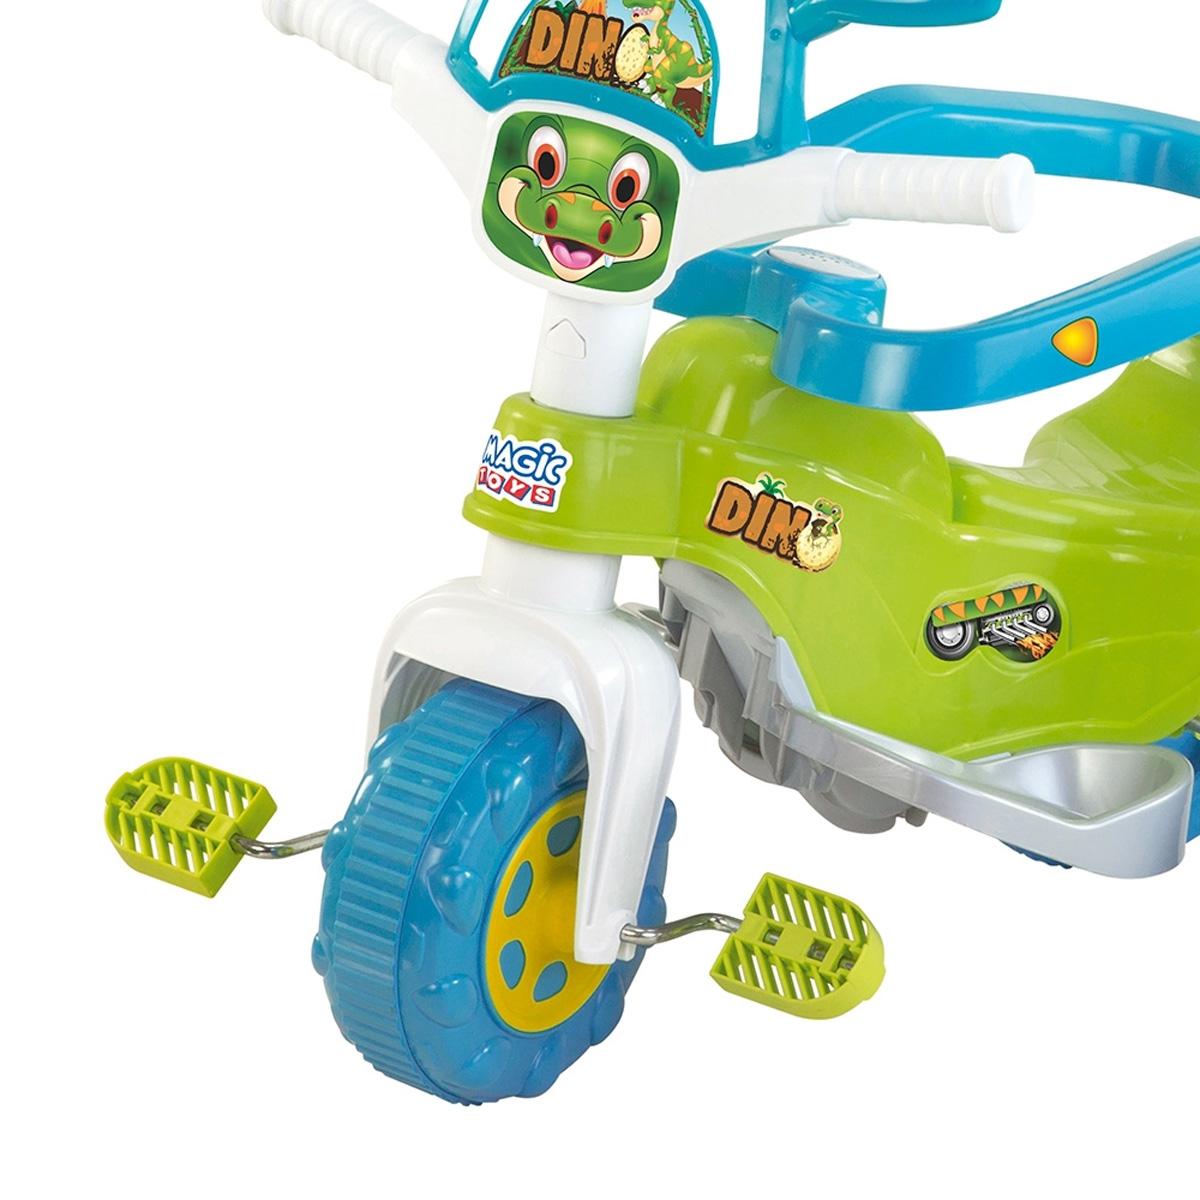 Triciclo Tico-Tico Dino Pink Motoca Infantil Magic Toys 2804